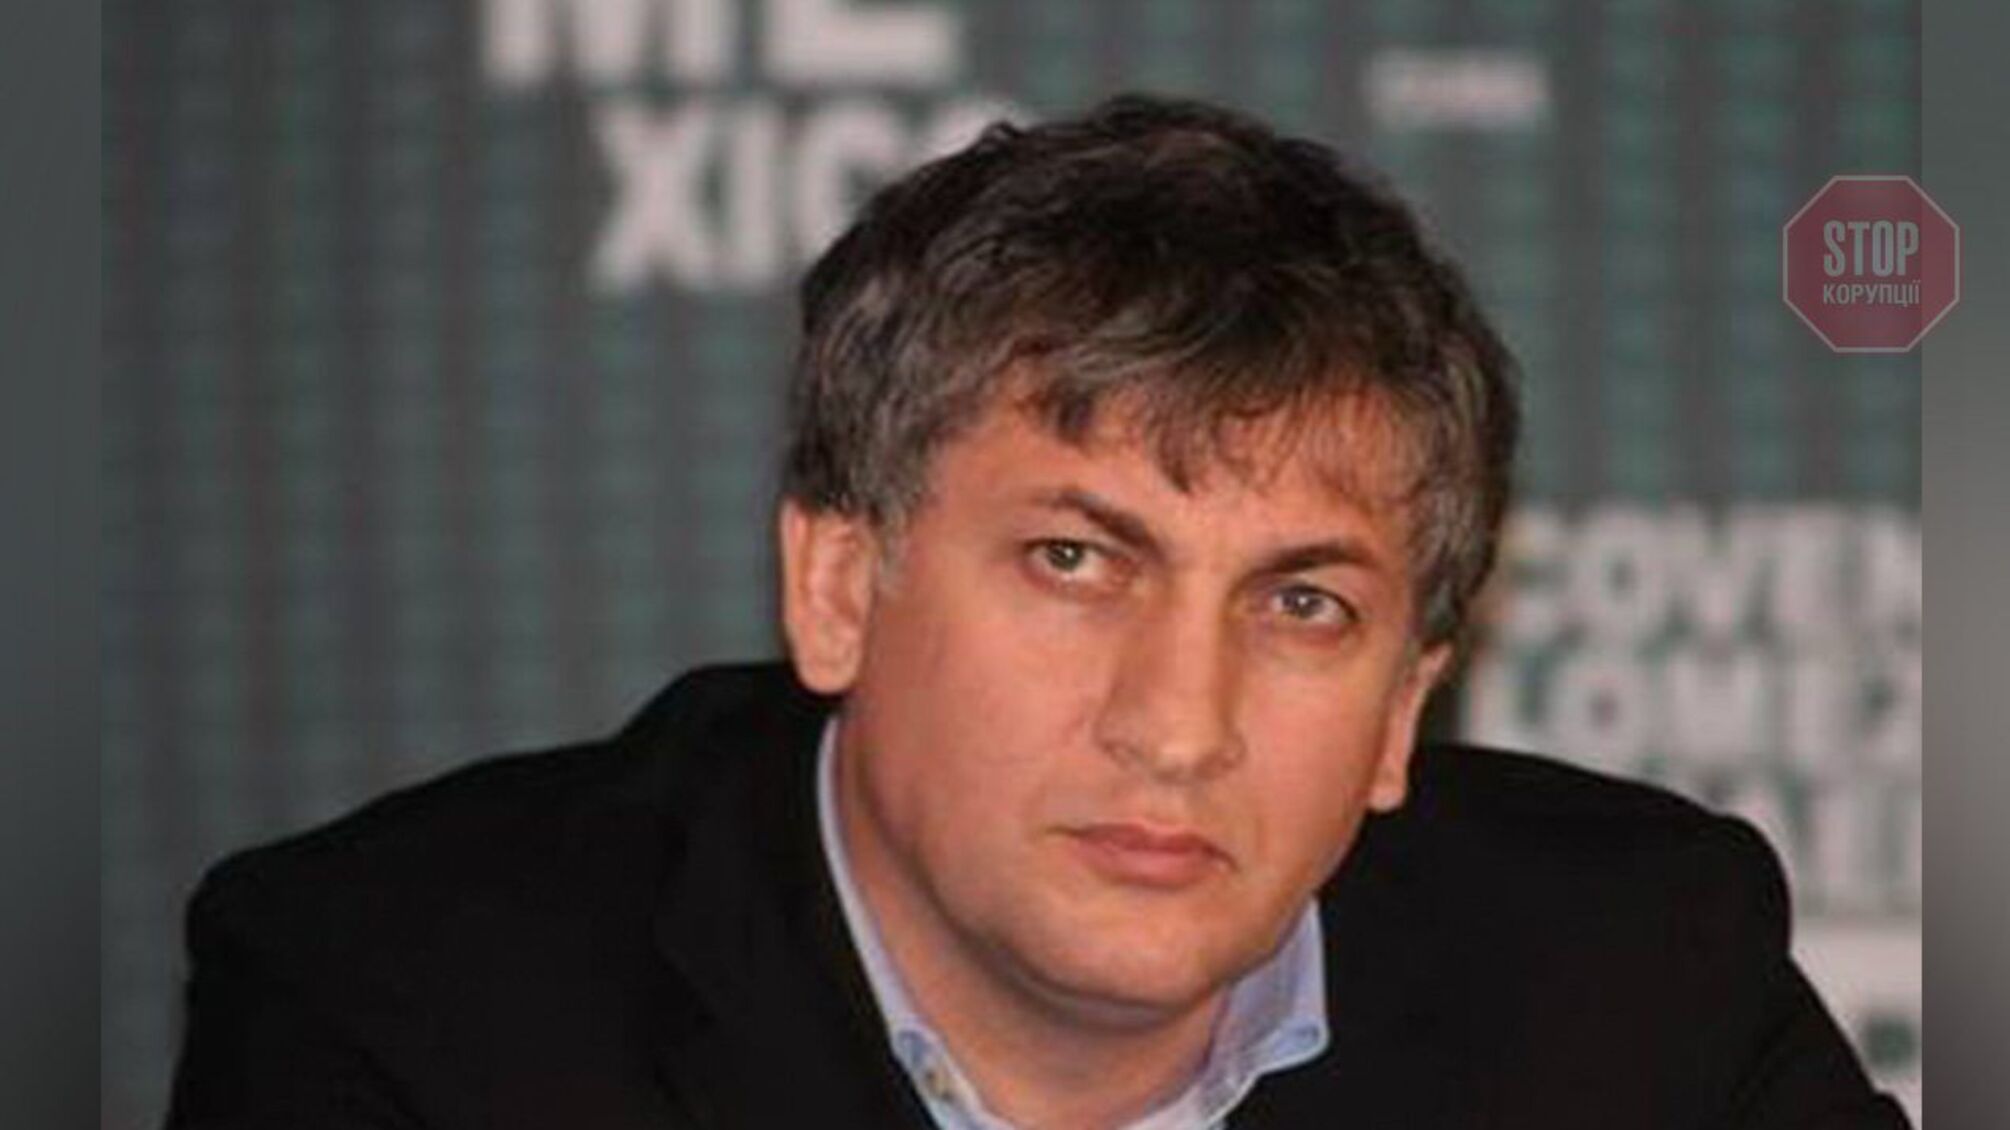 Спецоперация РФ? Похищен лидер чеченской диаспоры Житомирщины Гелагаев